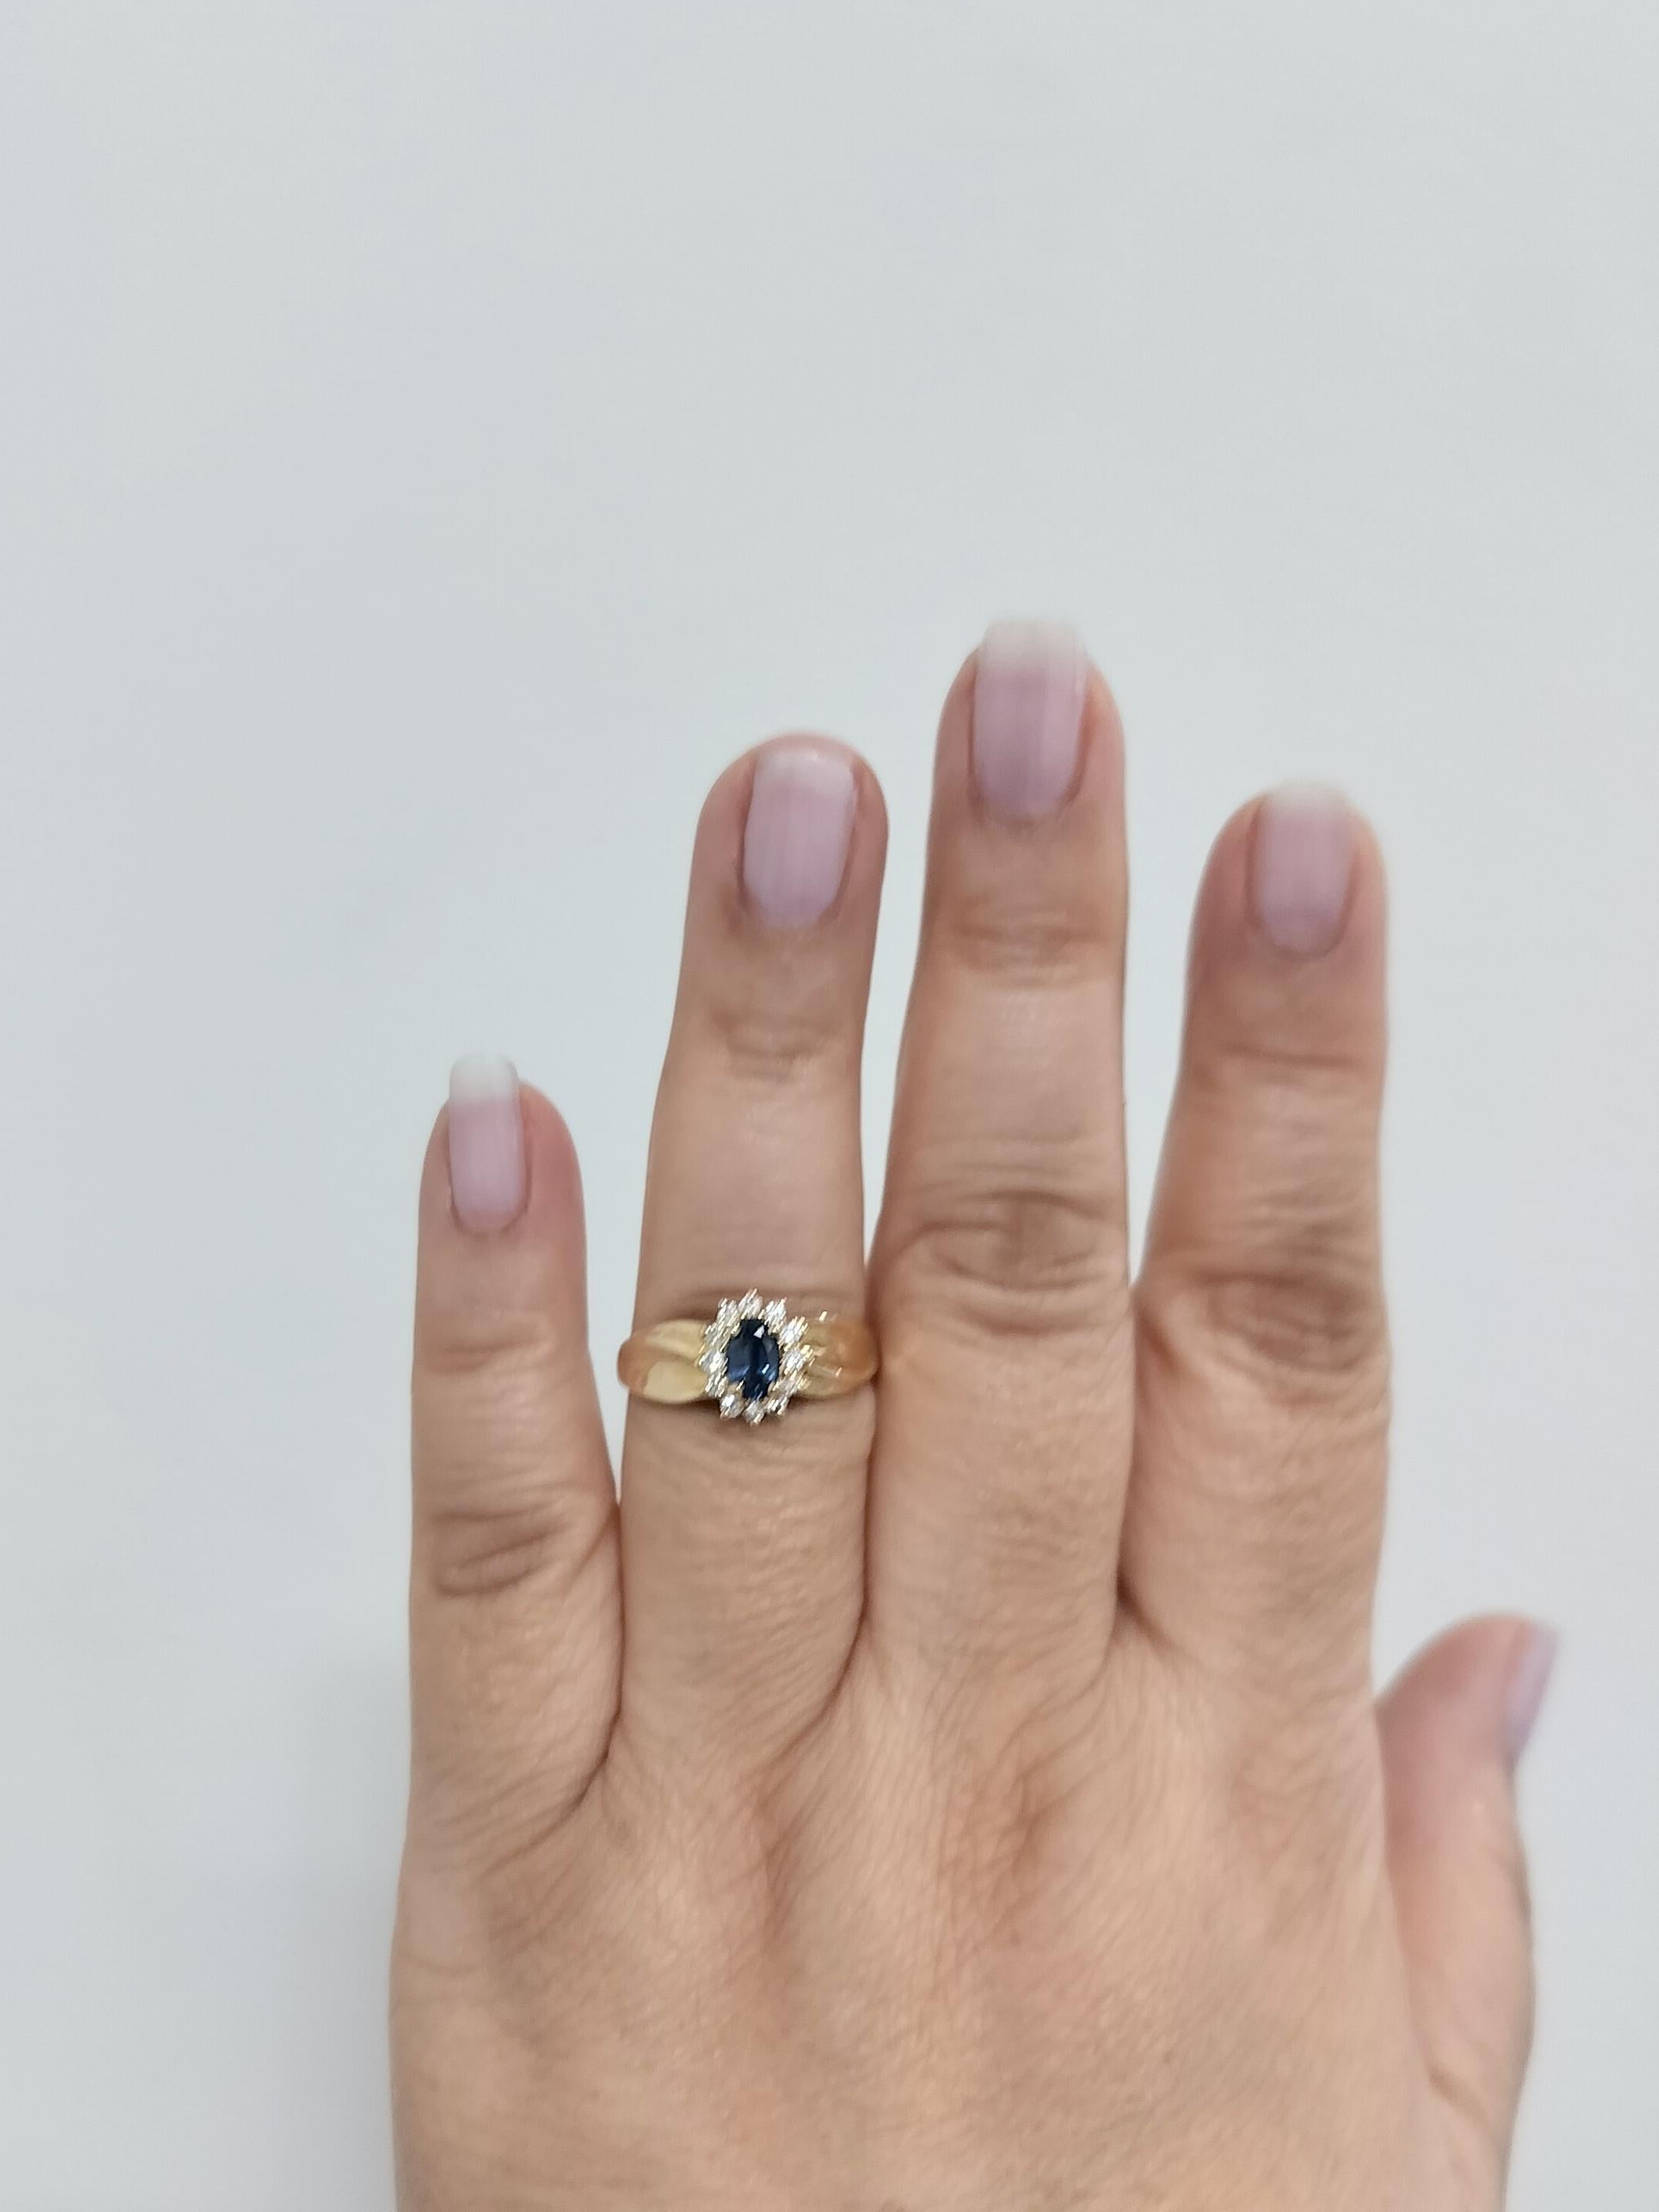 Wunderschönes 0,50 ct. blaues Saphir-Oval mit 0,25 ct. weißen Diamanten in guter Qualität.  Handgefertigt in 14k Gelbgold.  Ringgröße 9.25.